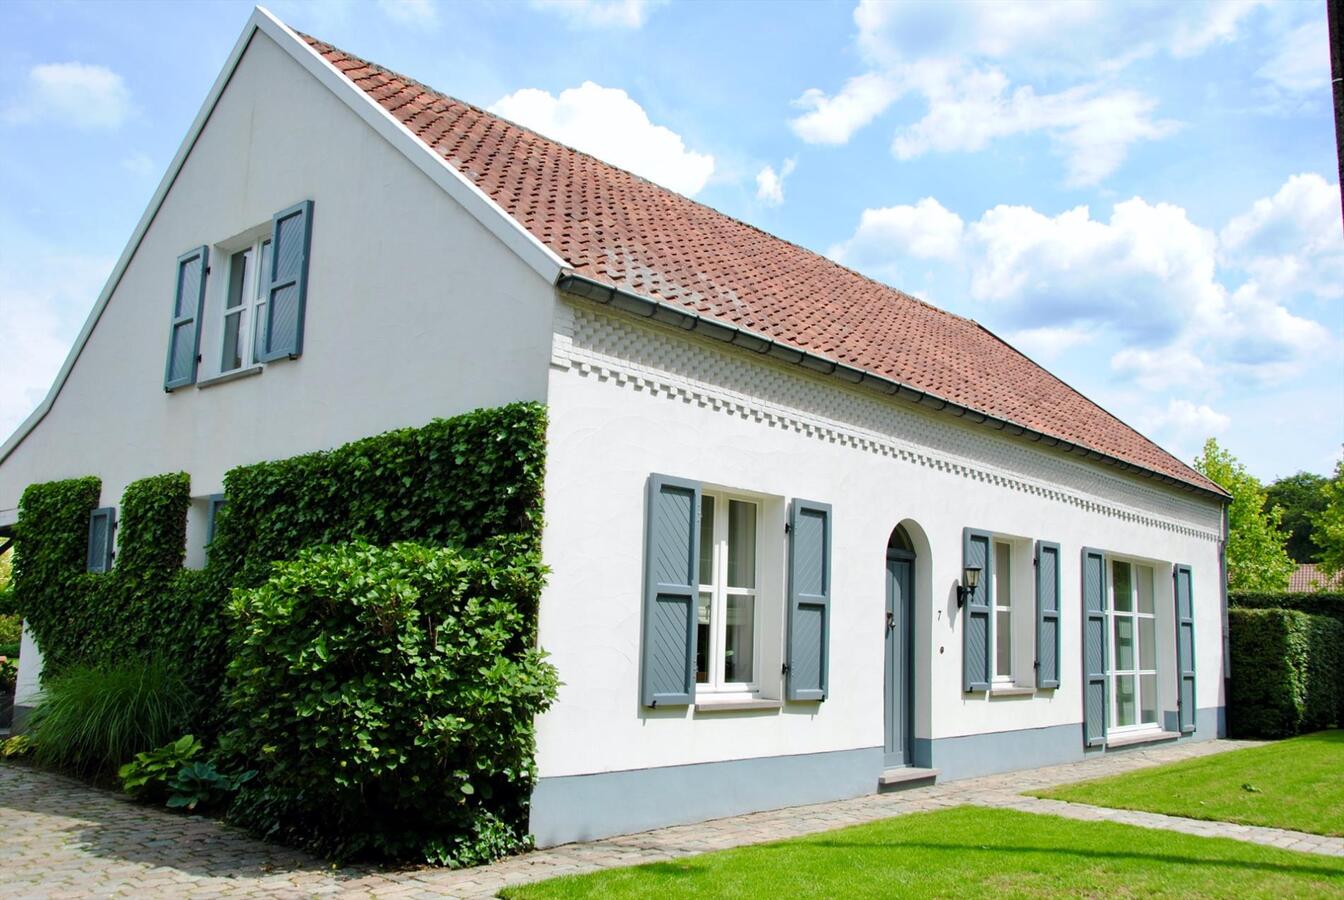 Property sold in Vosselaar